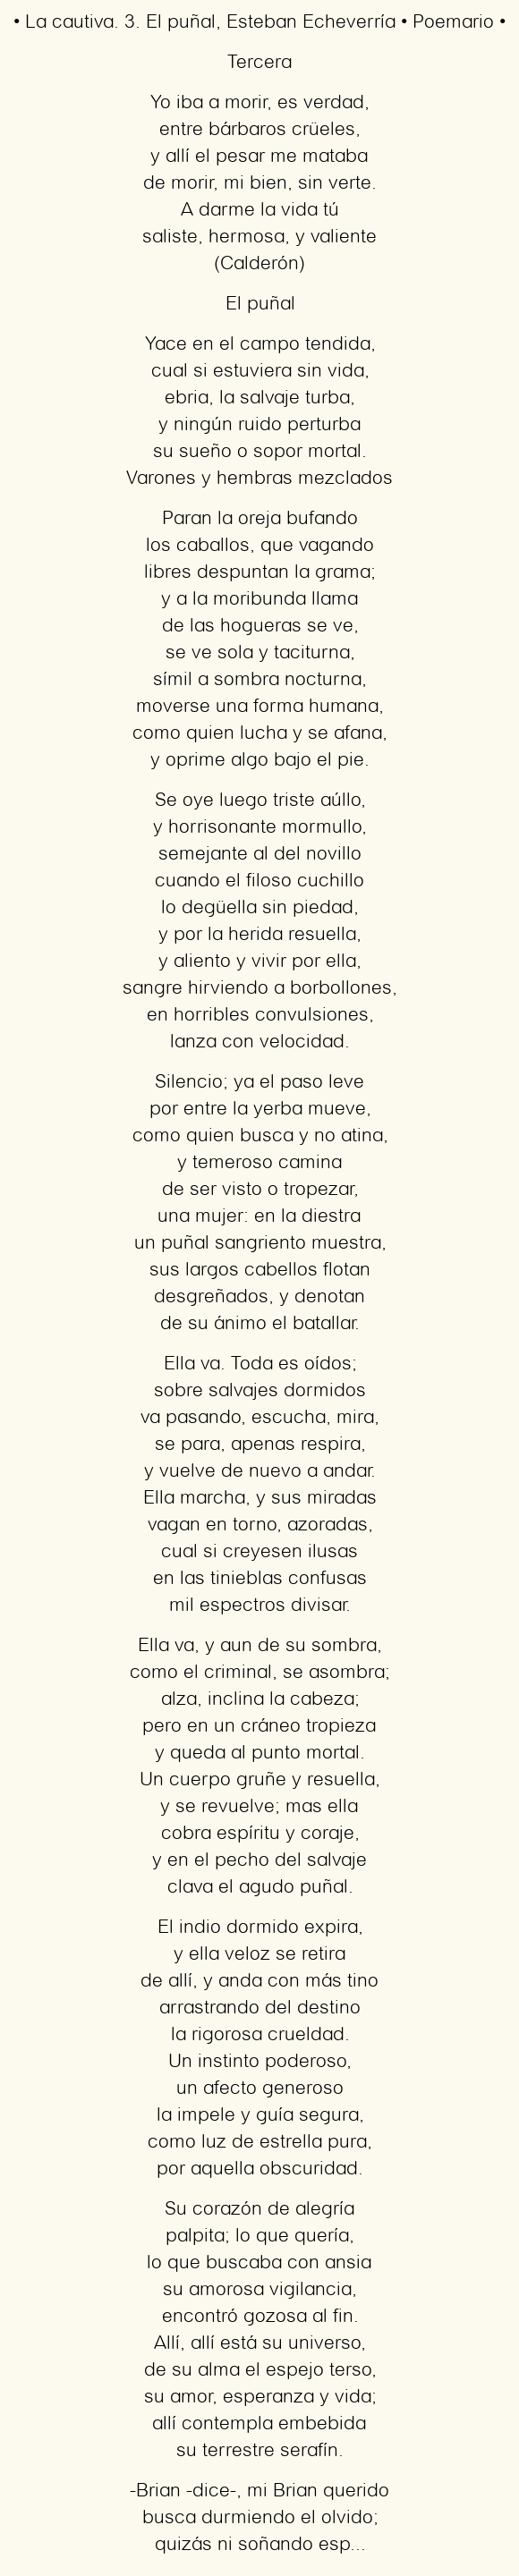 Imagen con el poema La cautiva. 3. El puñal, por Esteban Echeverría